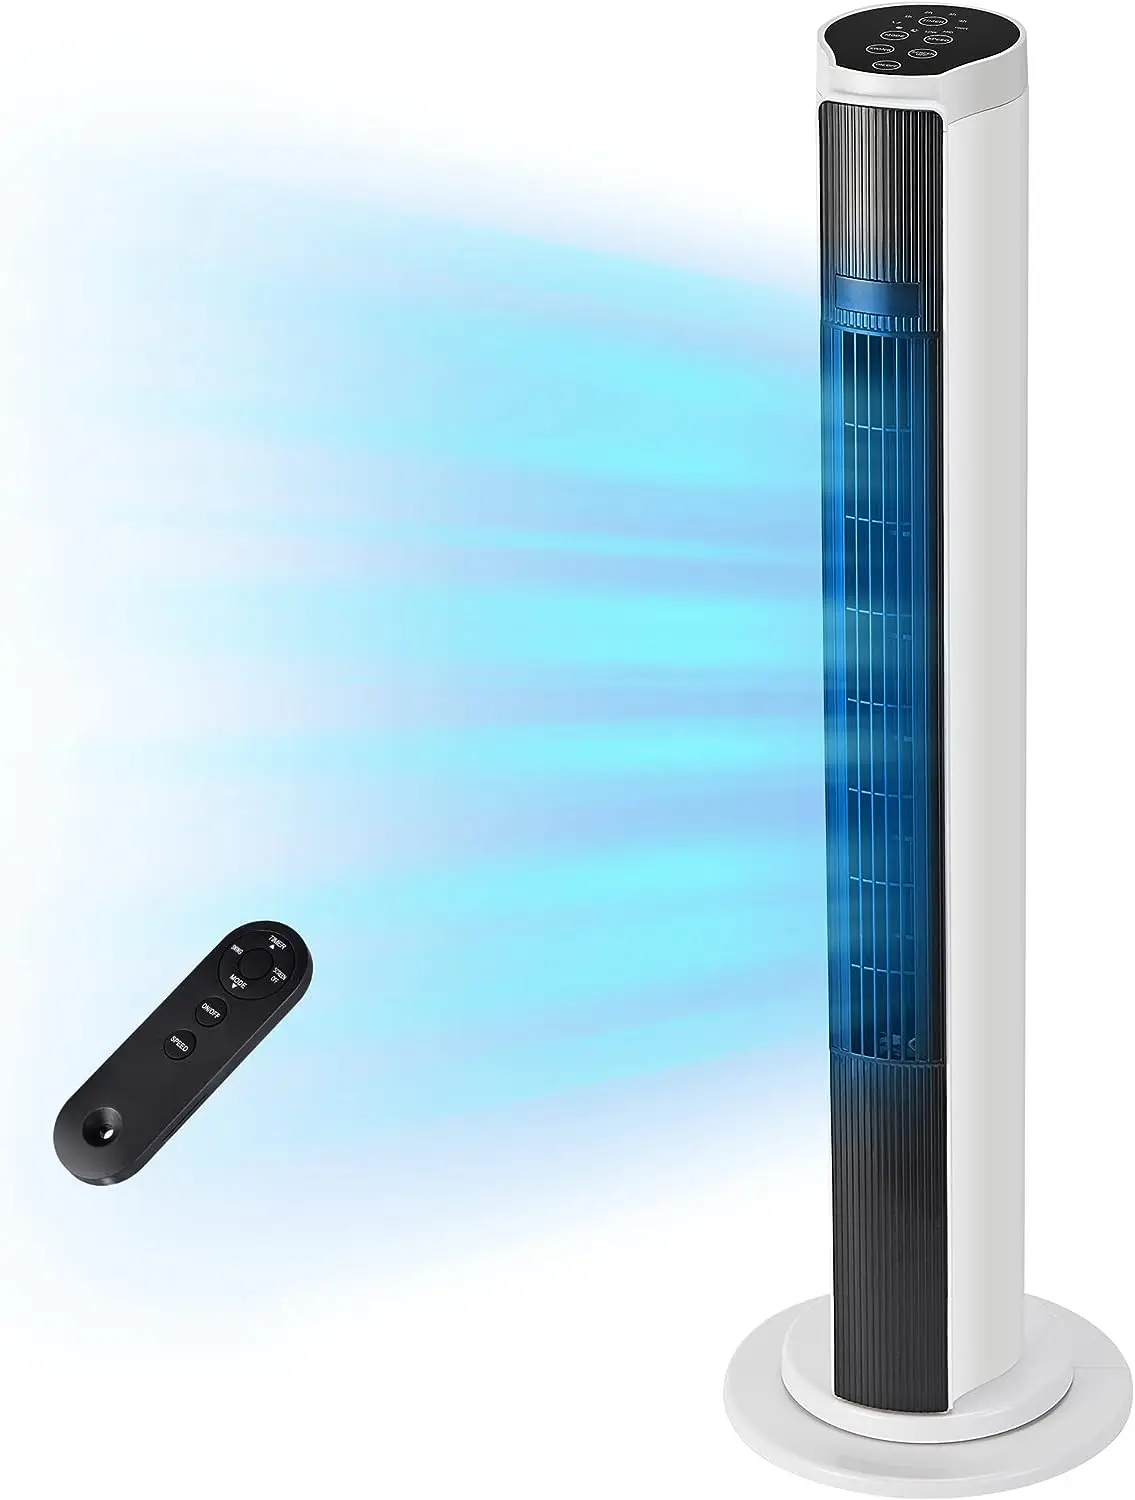 

Башенный вентилятор с дистанционным управлением, 80 ° Осциллирующий безлопастный вентилятор с таймером 10 часов, 36-дюймовый тихий напольный вентилятор охлаждения с 3 скоростями, 3